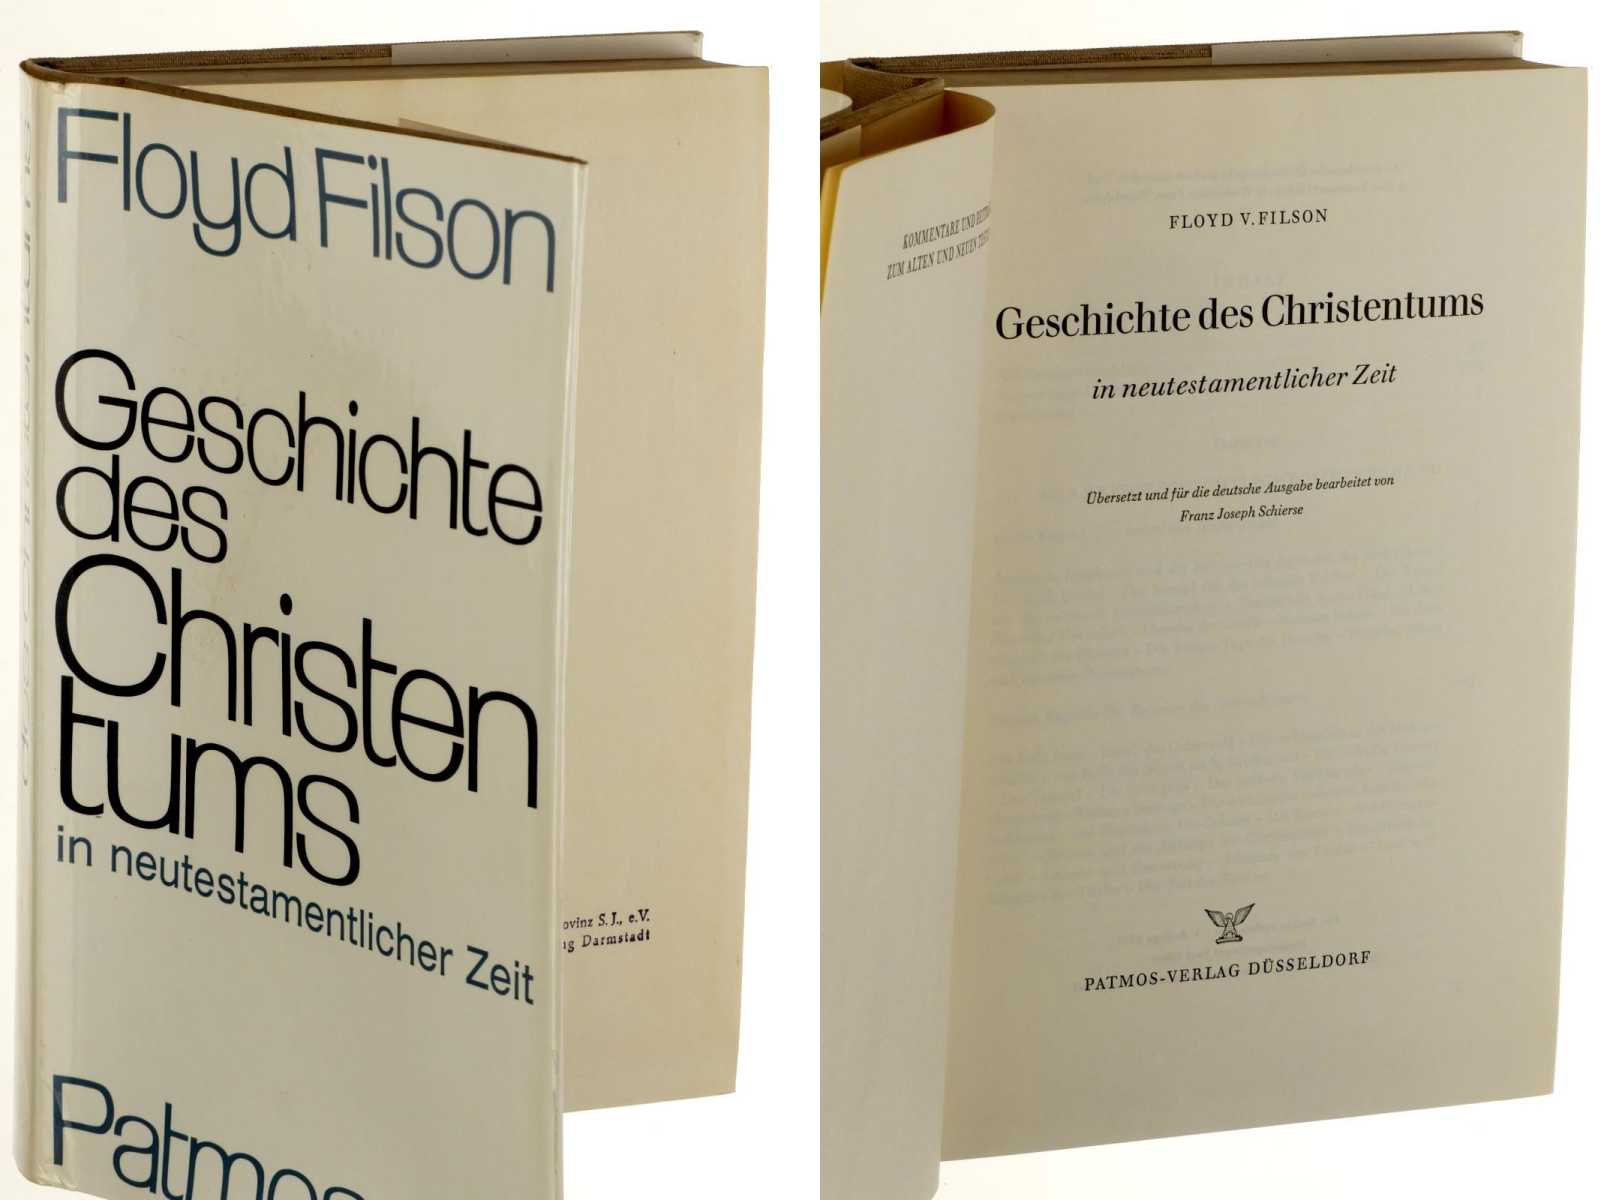 Filson, Floyd V.:  Geschichte des Christentums in neutestamentlicher Zeit. Übers. u. f. d. dt. Ausg. bearb. von F. J. Schierse. 